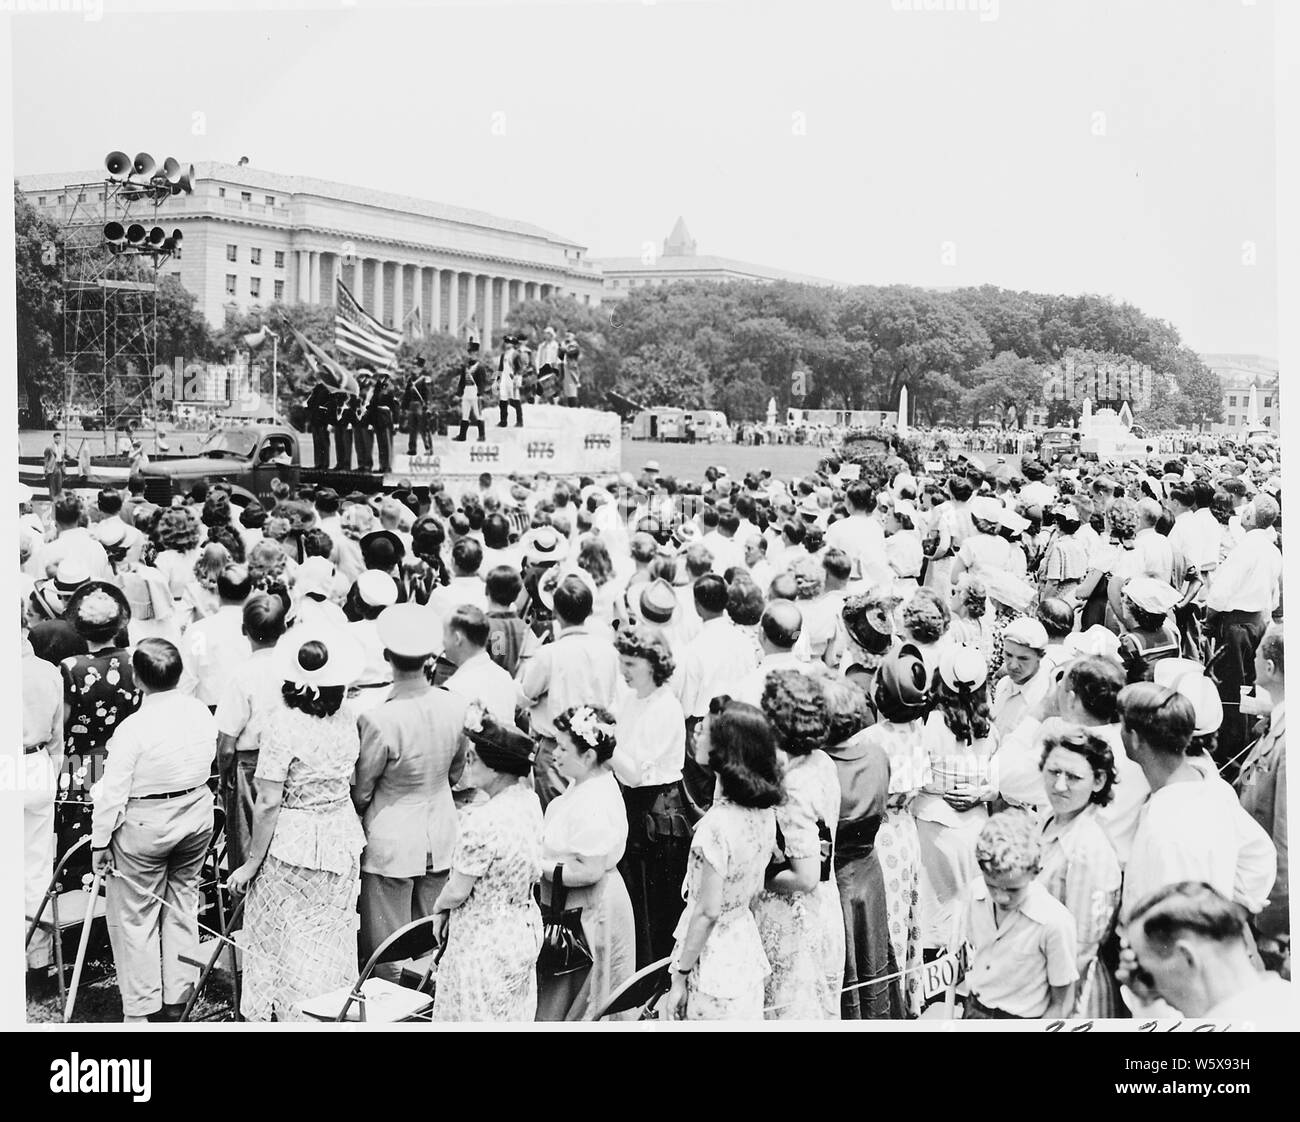 Il Presidente Truman assiste le cerimonie per celebrare il centesimo anniversario del Monumento di Washington. Questa vista mostra la folla a guardare la parata. Foto Stock